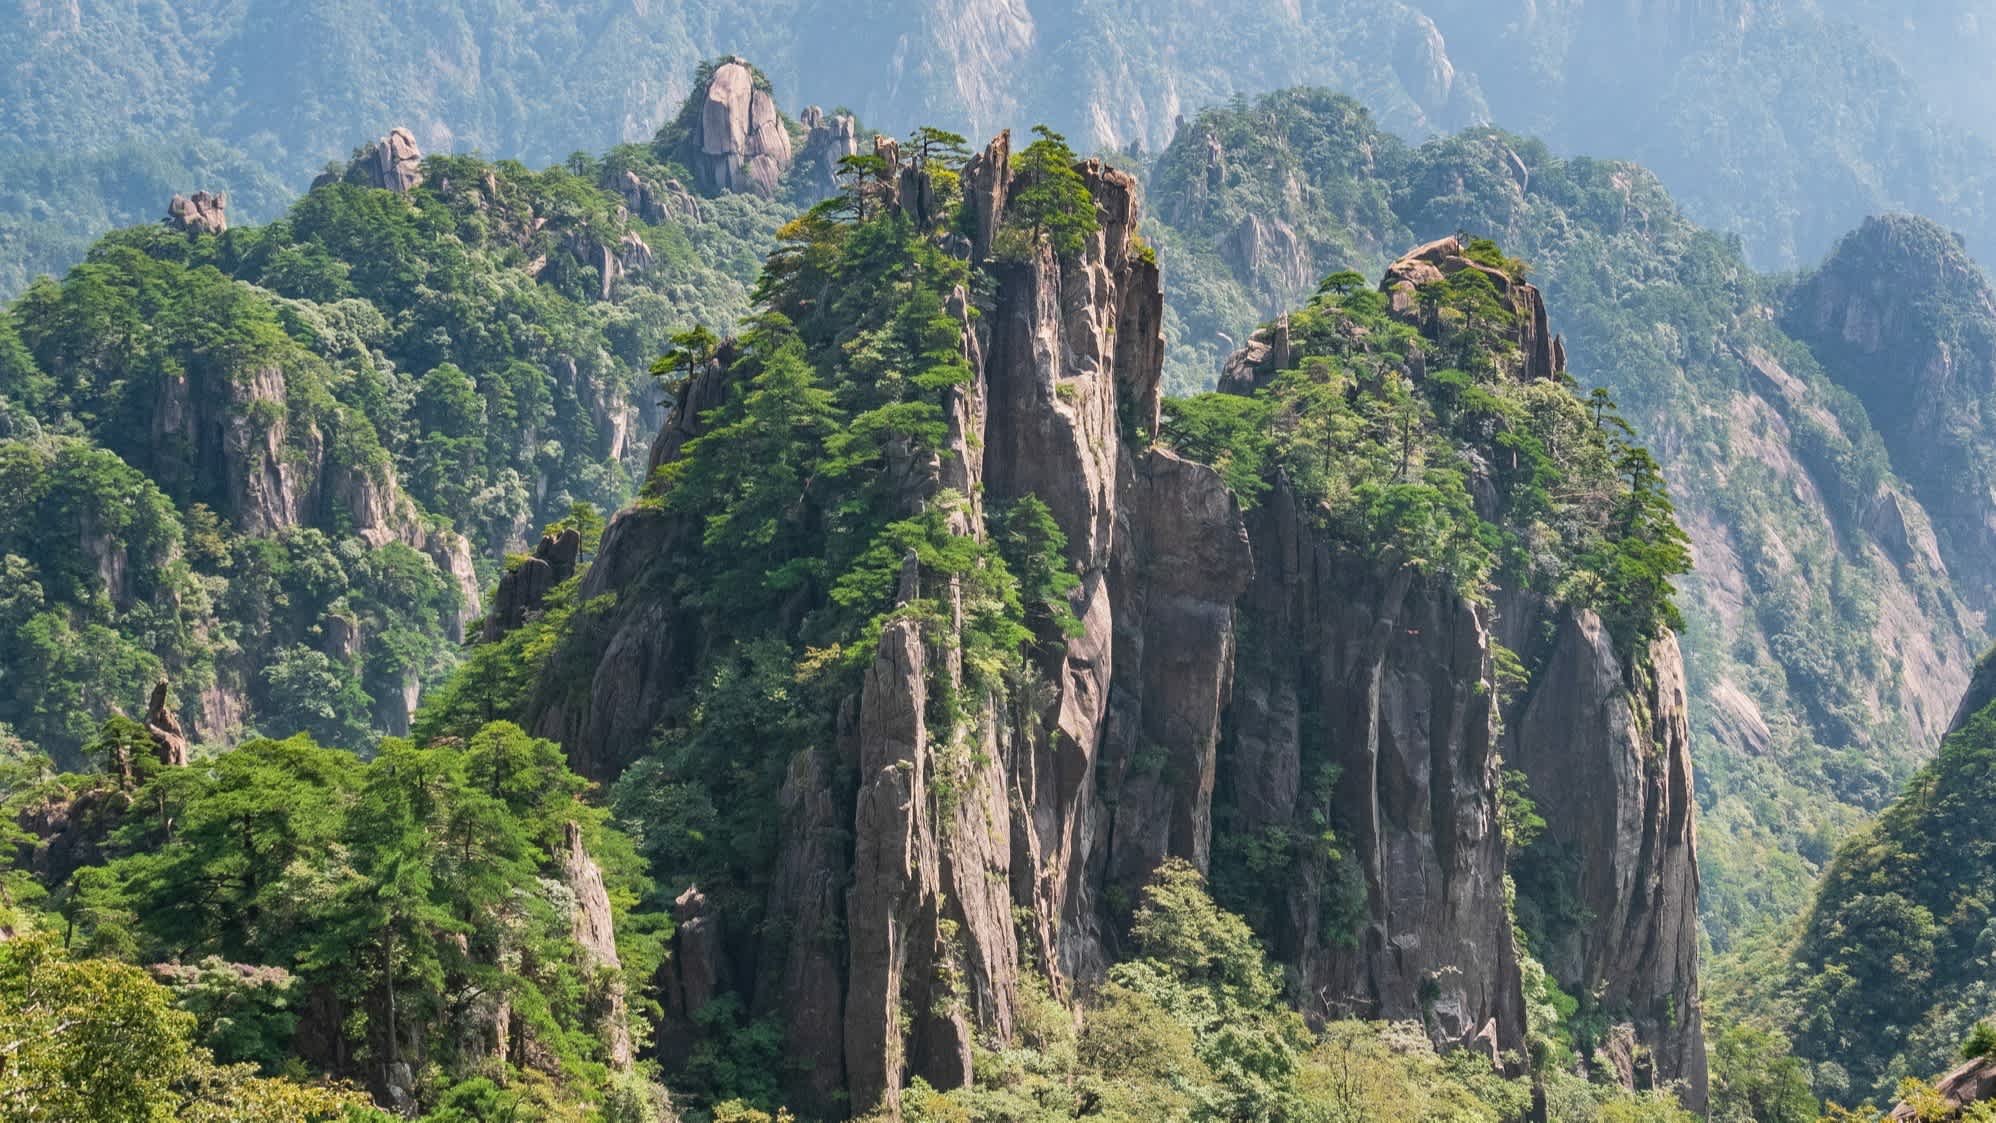 Paysage montagneux verdoyant de Huangshan, en Chine.